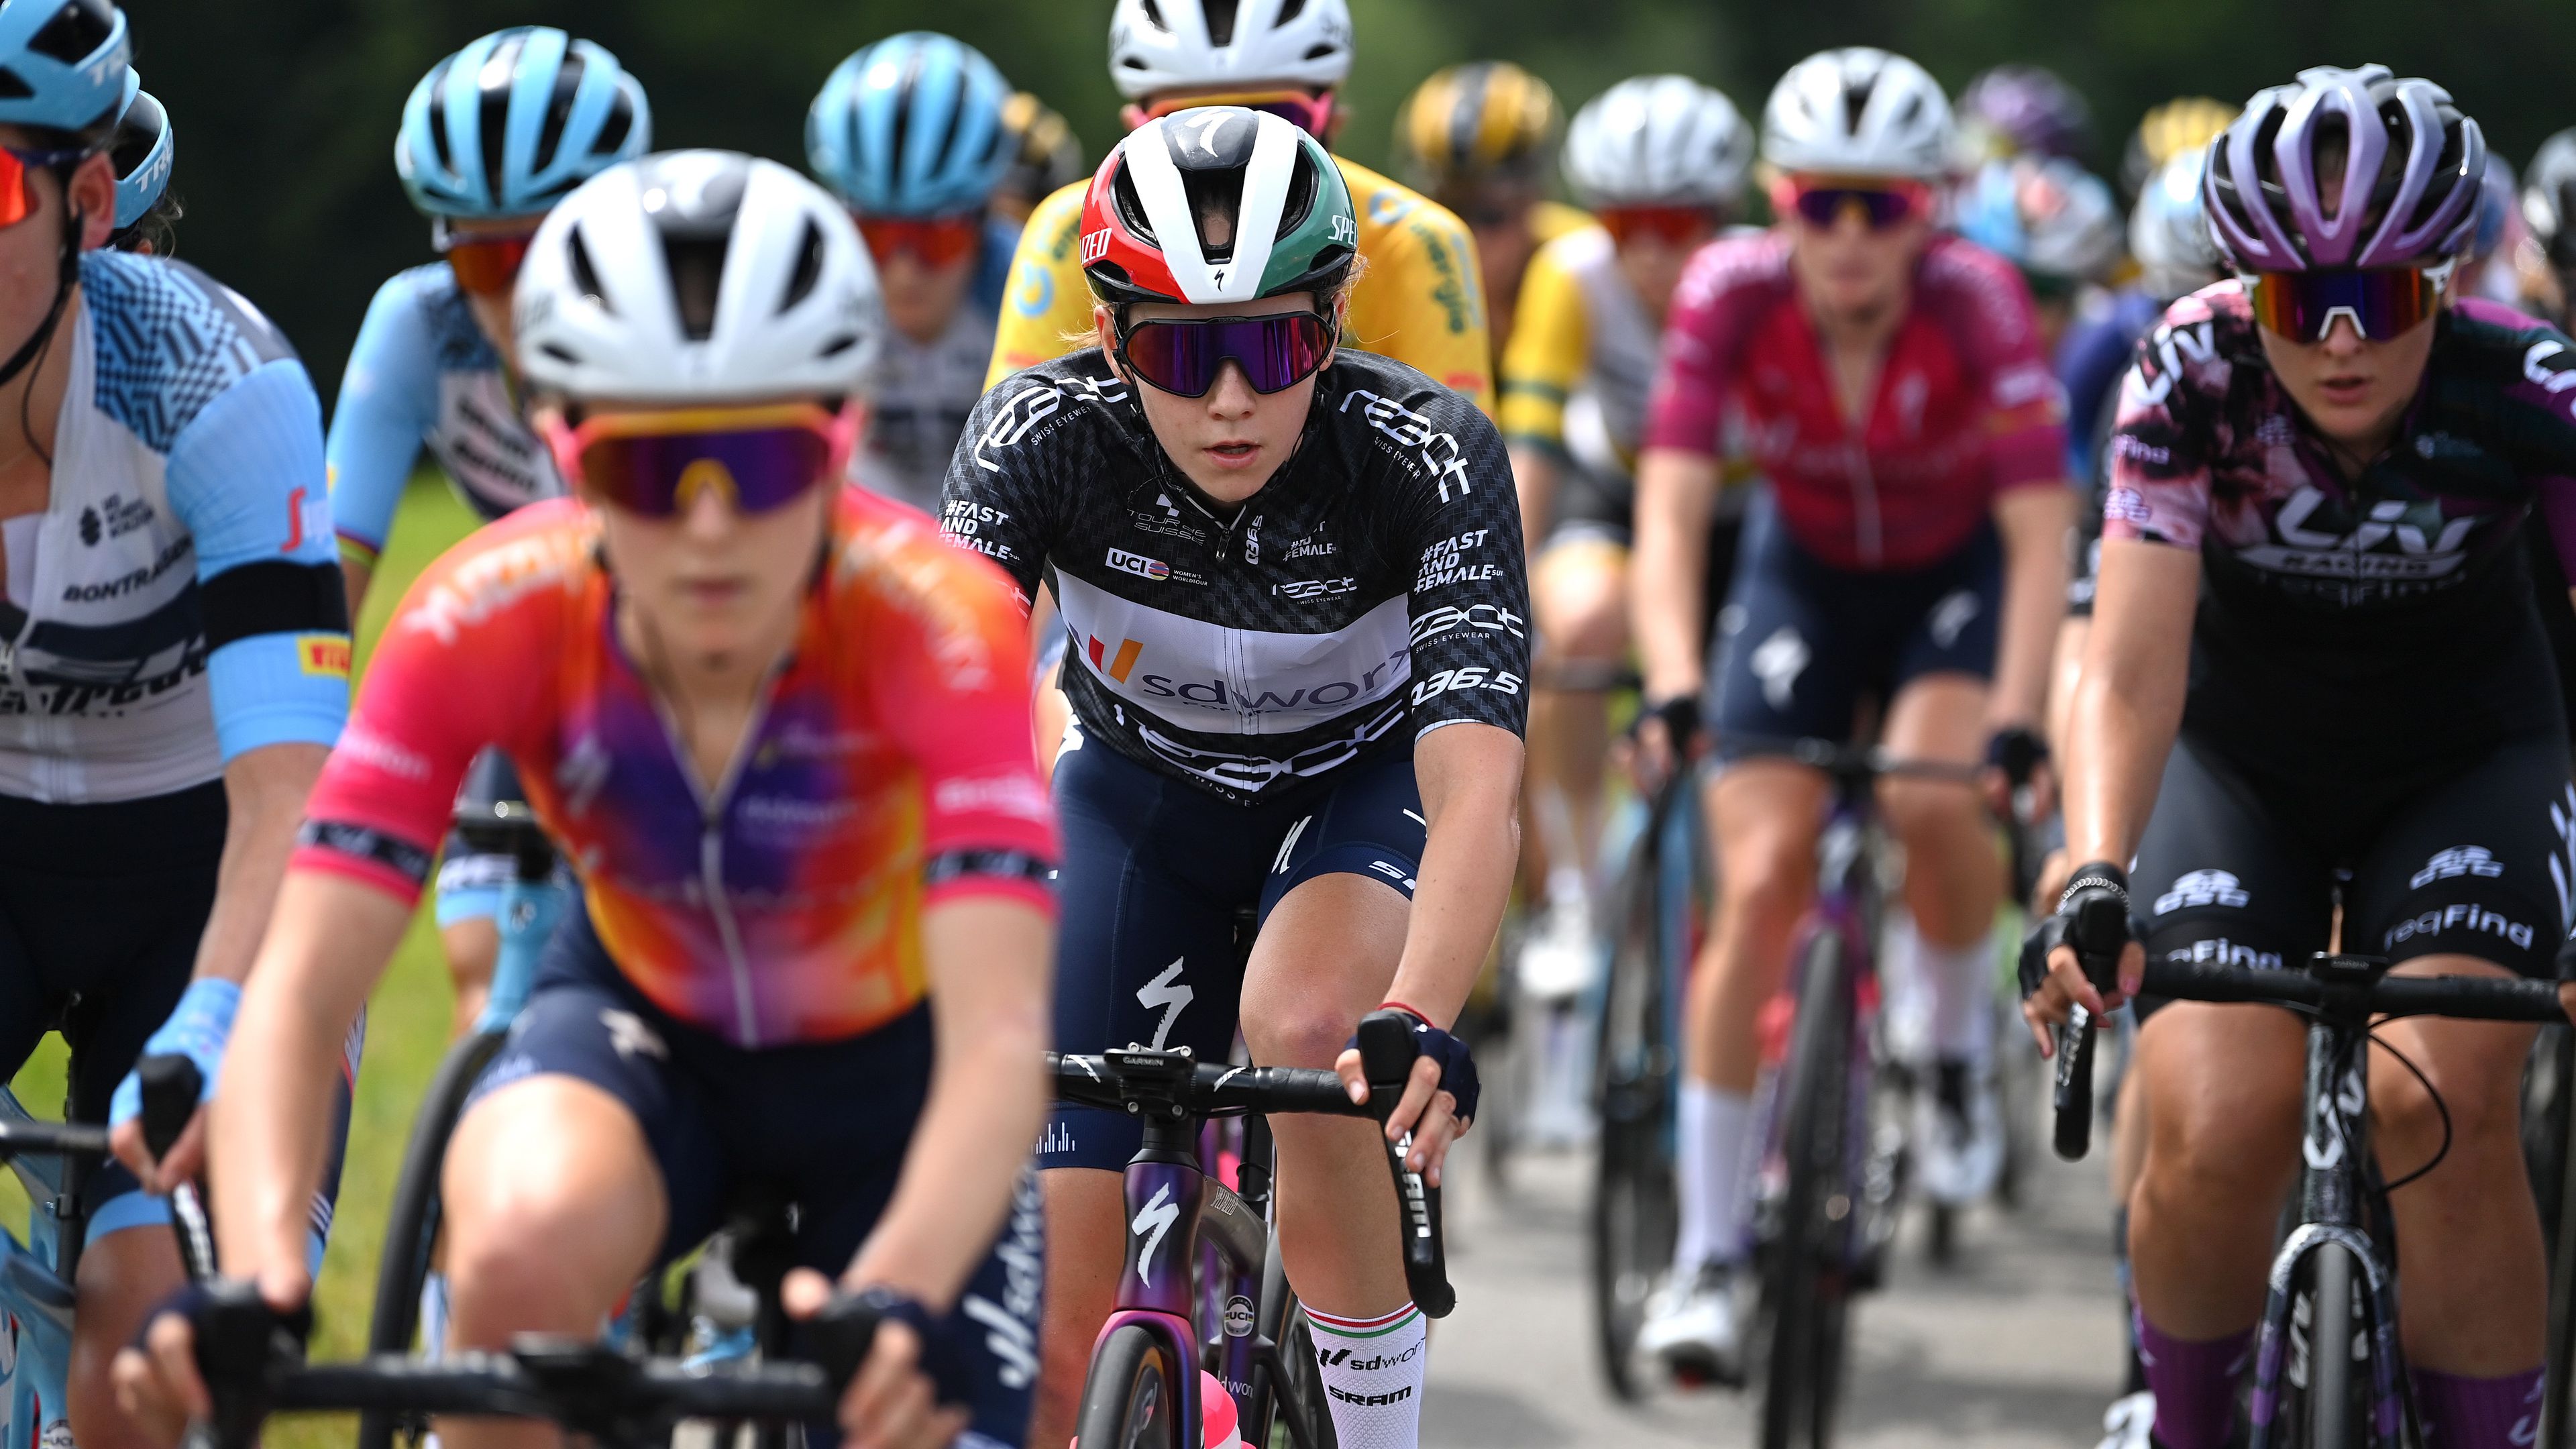 Vas Kata Blanka a 42. lett a Giro negyedik szakaszán